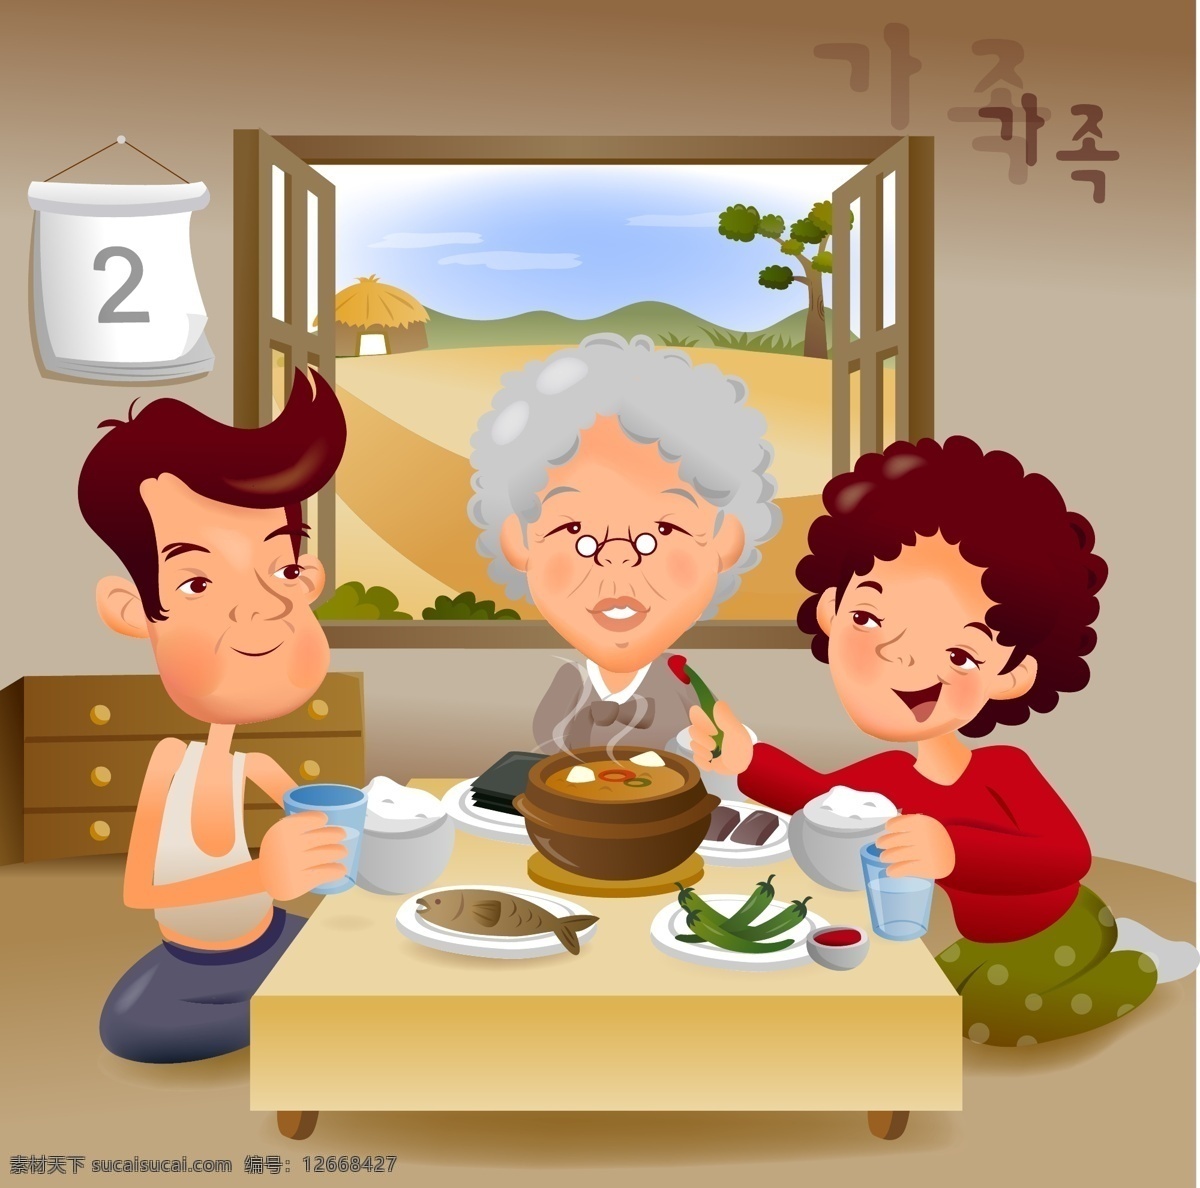 窗户 家庭 卡通 可爱 老奶奶 人物 日常生活 日历 食物 插画 矢量 模板下载 吃放 矢量素材 矢量人物 插画集